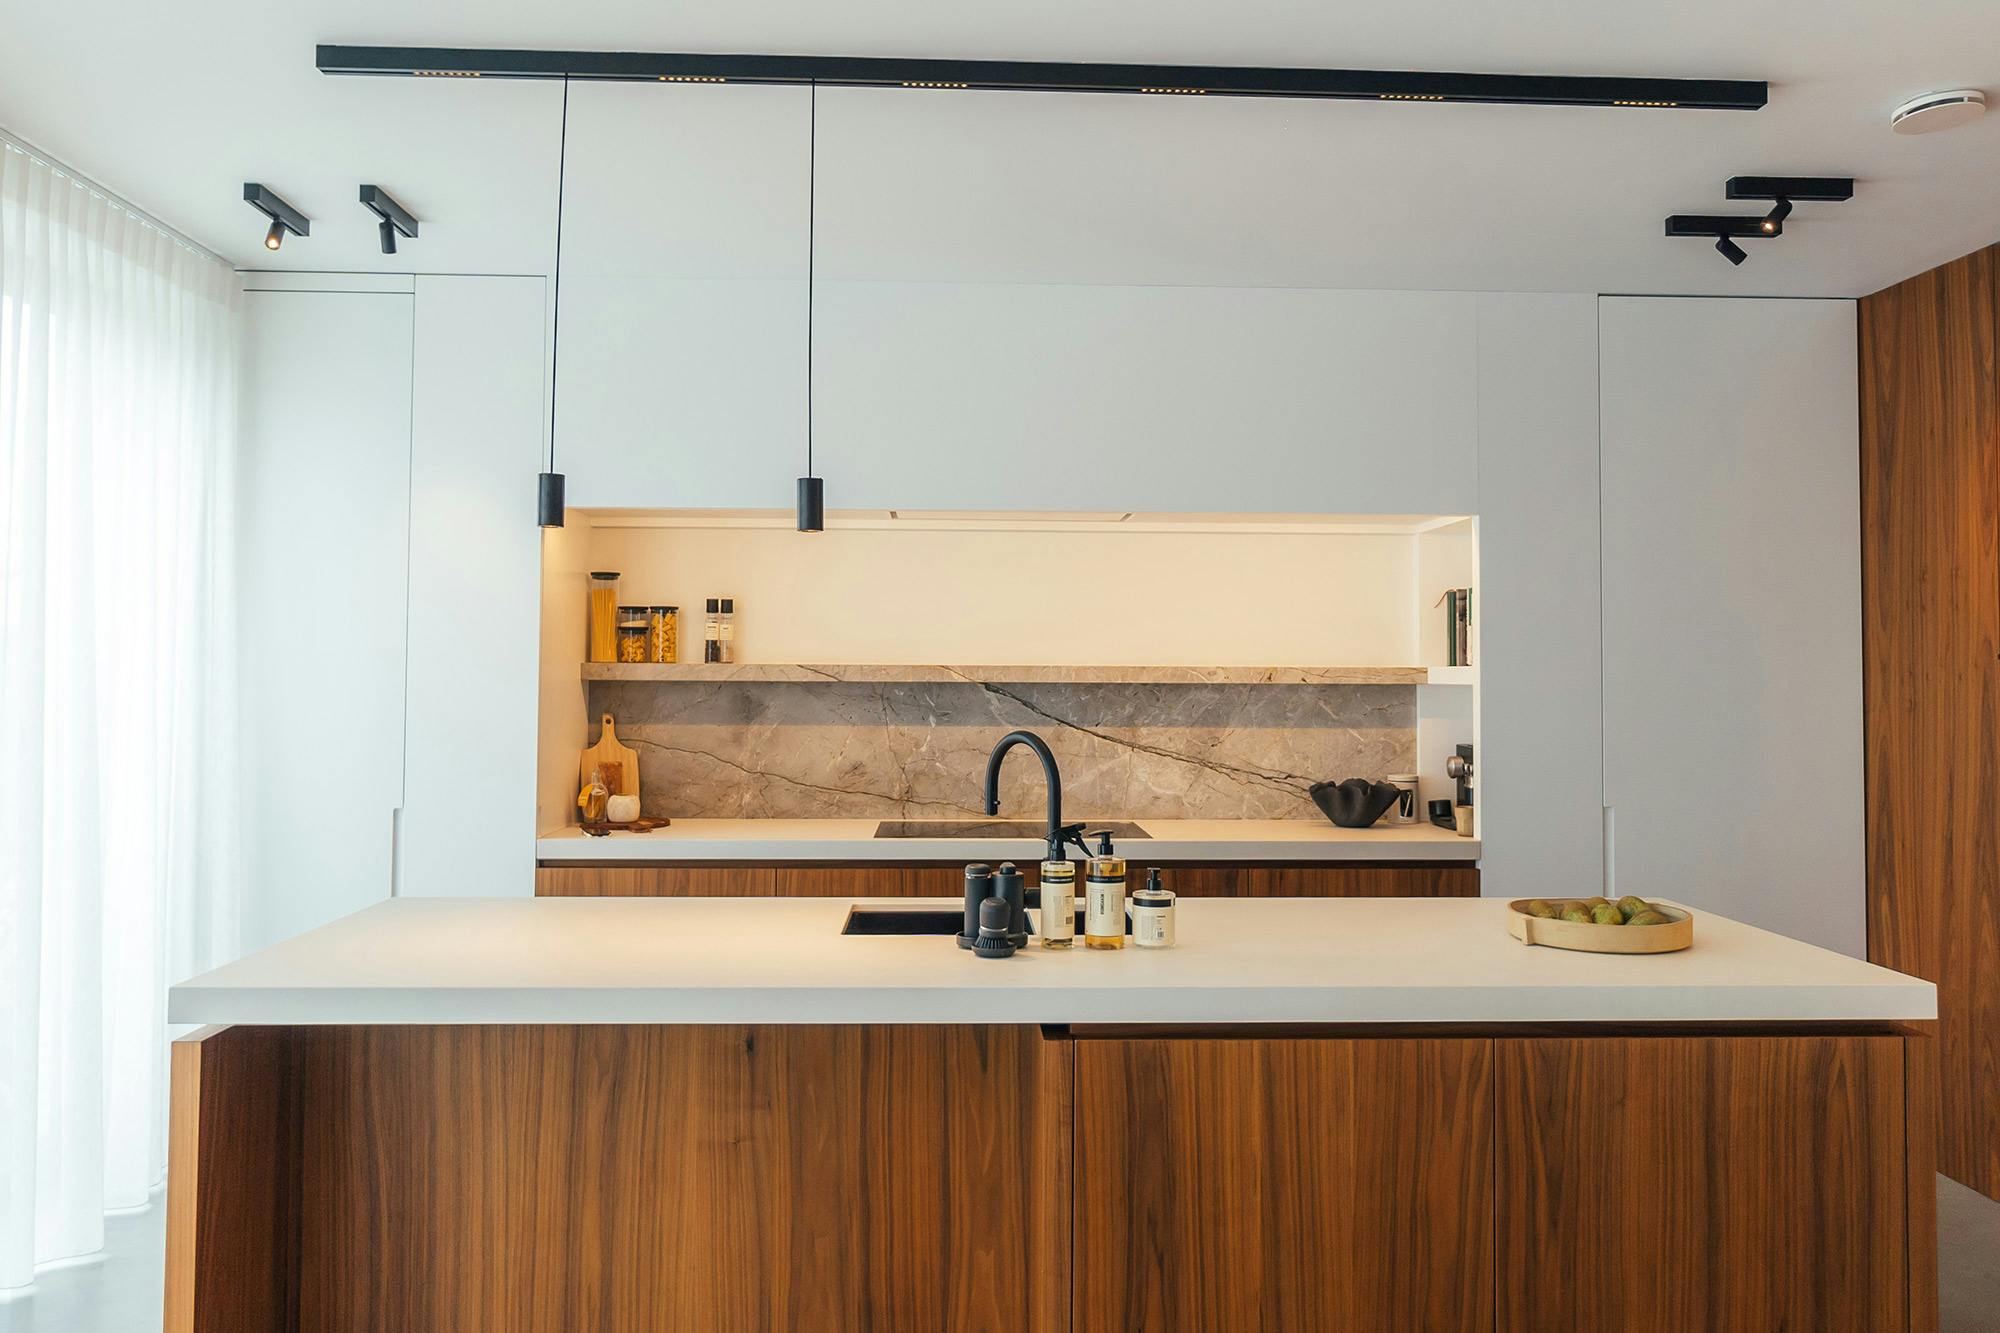 Numero immagine 33 della sezione corrente di Architect and interior designer Memmu Pitkänen chose the beautiful DKTN Helena for her kitchen di Cosentino Italia